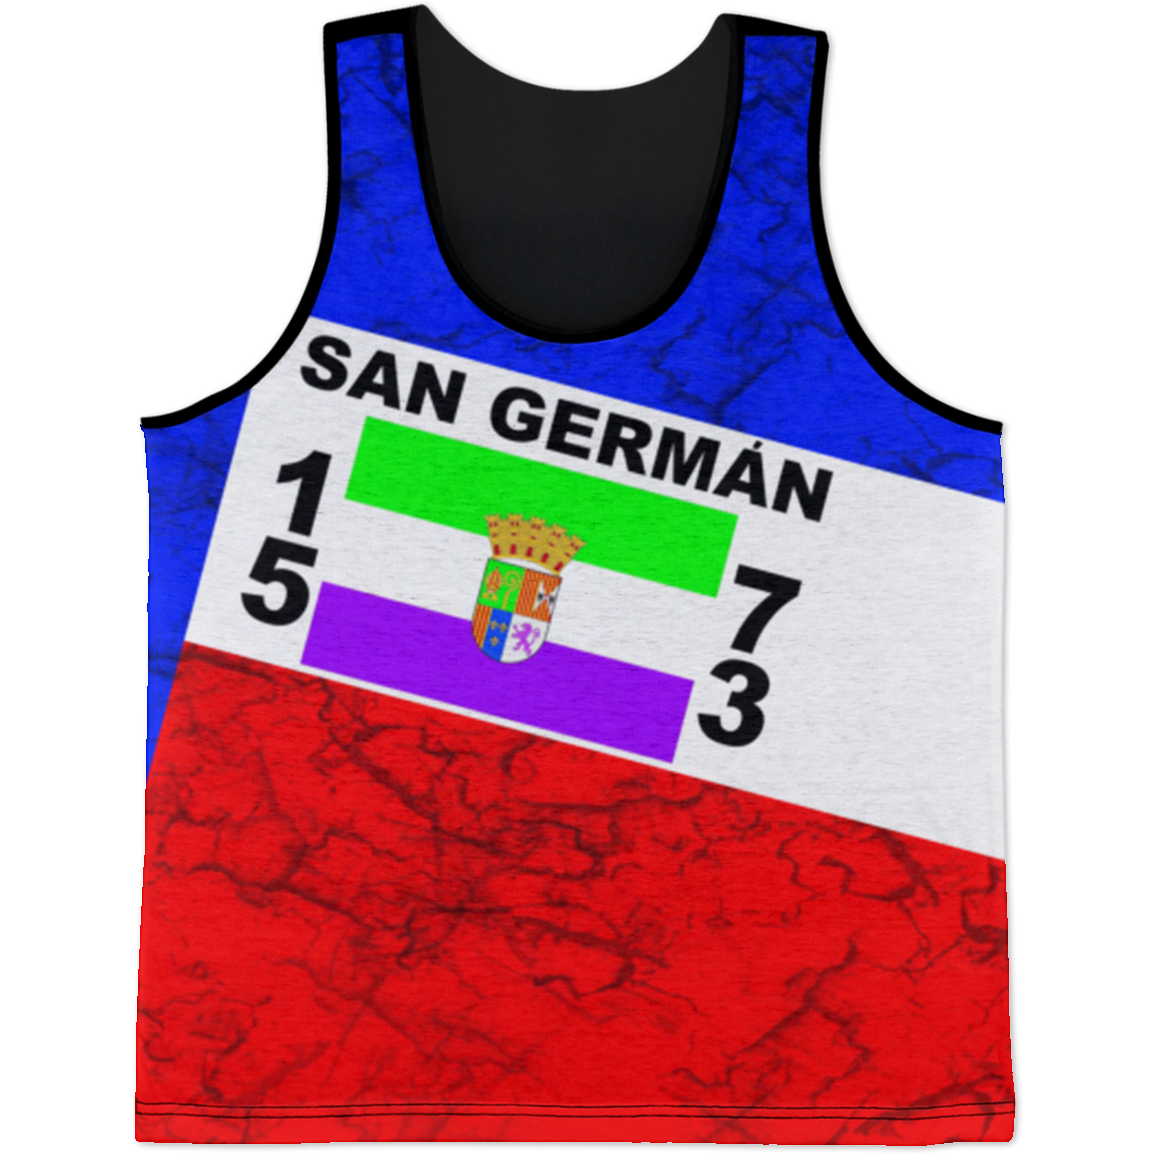 San German Tank Top - Puerto Rican Pride